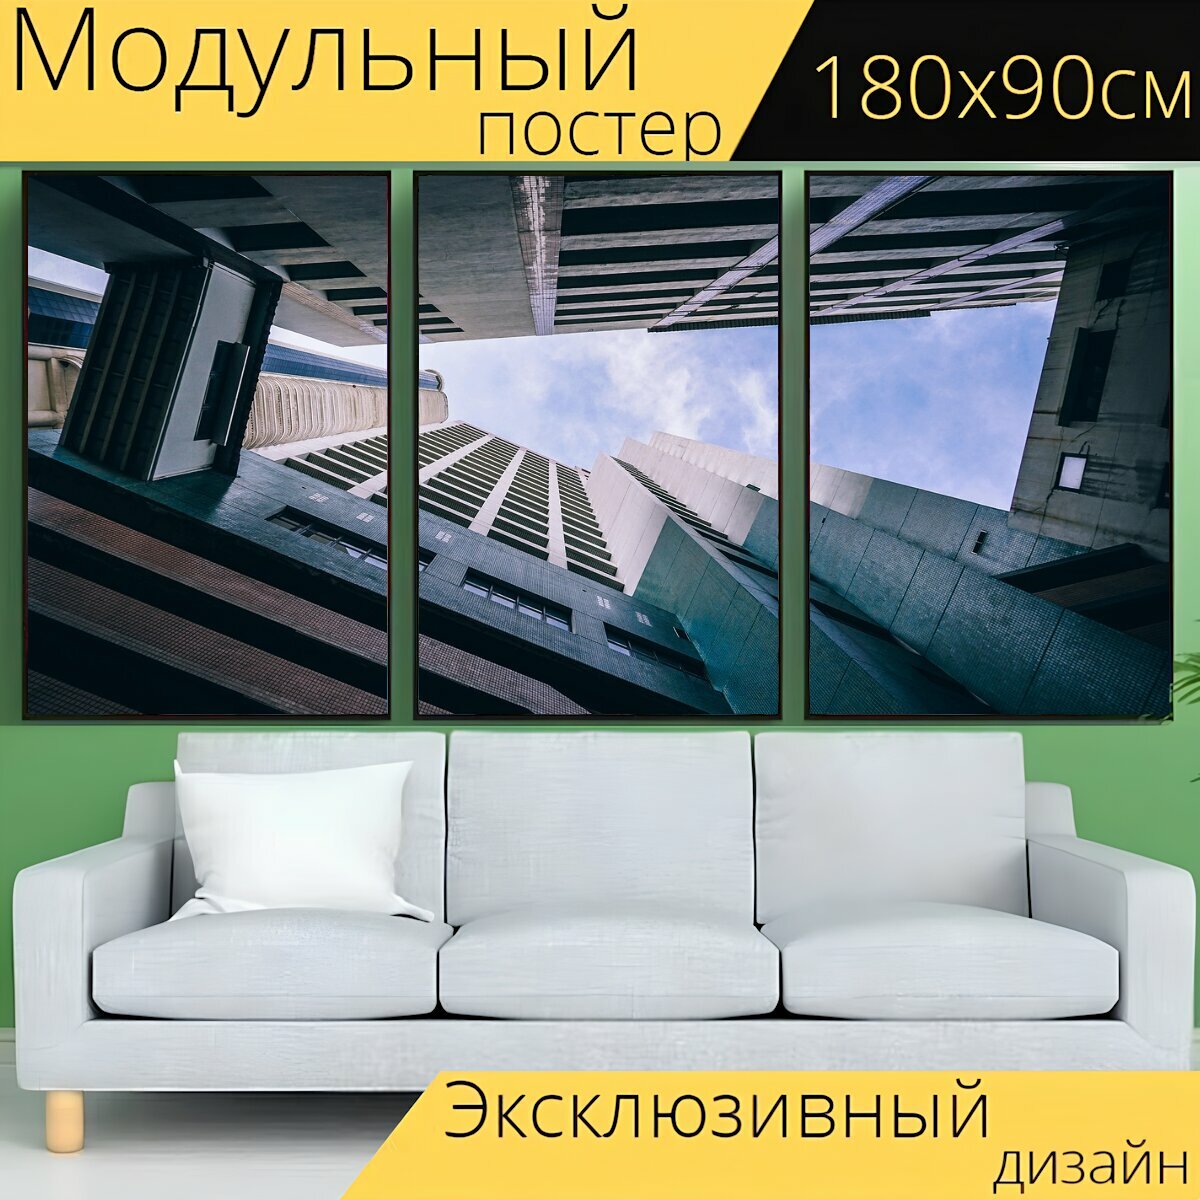 Модульный постер "Архитектуры строительство высотный" 180 x 90 см. для интерьера